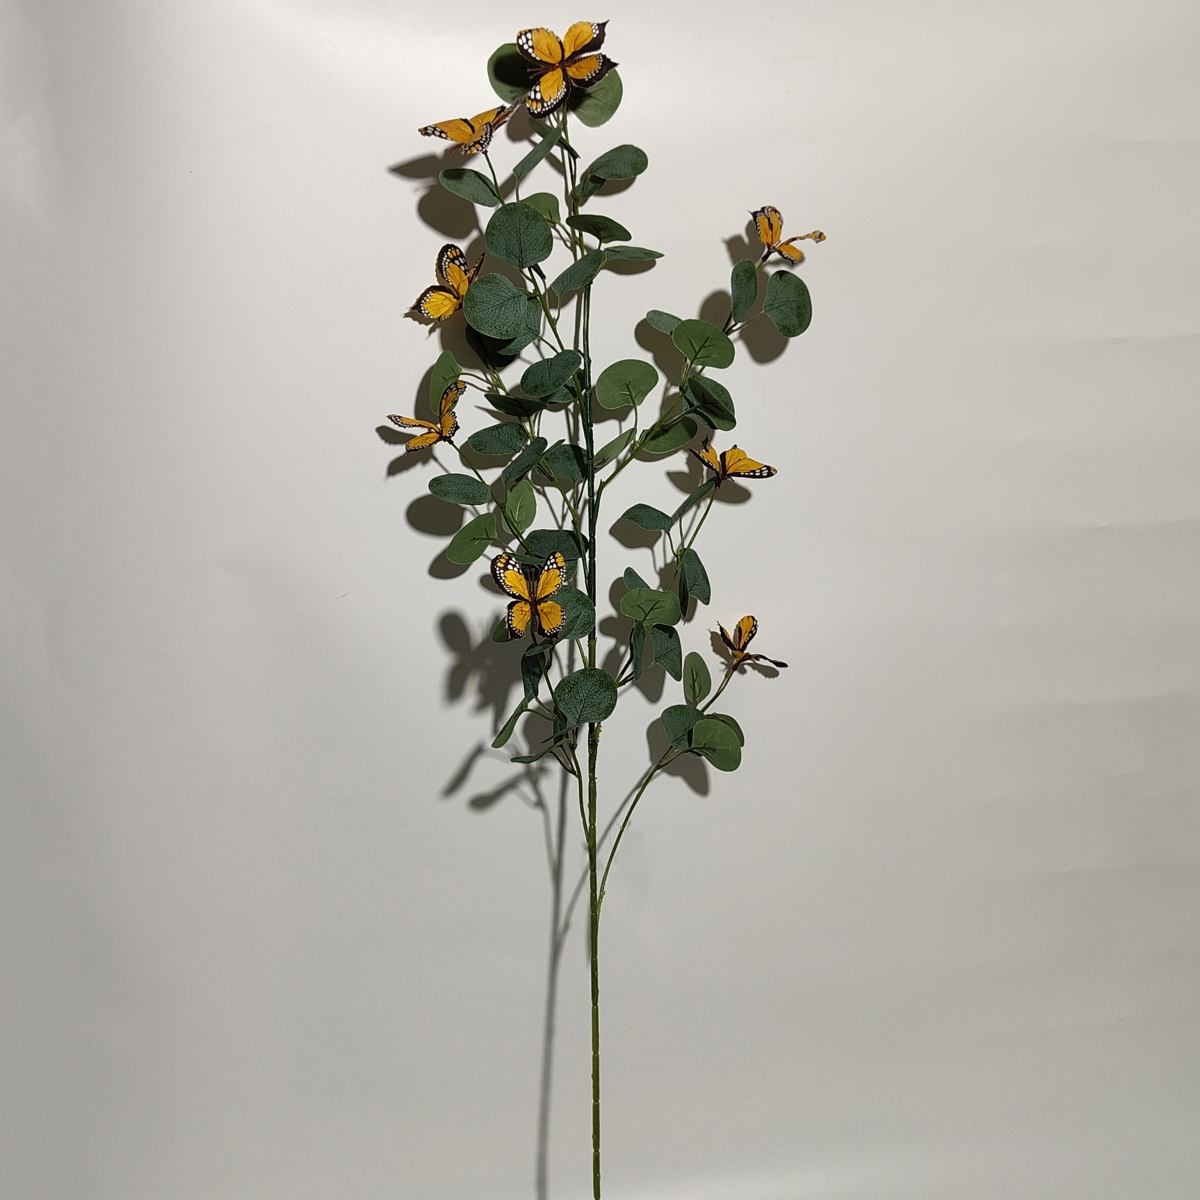 លក់ដុំផ្កាសិប្បនិម្មិតដើមវែងជាមួយមេអំបៅ ស្លឹកឈើទាលពណ៌បៃតង រុក្ខជាតិបៃតងសិប្បនិម្មិតសម្រាប់ការតុបតែងគេហដ្ឋាន - Sunyfar Artificial Flowers រោងចក្រចិន អ្នកផ្គត់ផ្គង់ ក្រុមហ៊ុនផលិត អ្នកលក់ដុំ